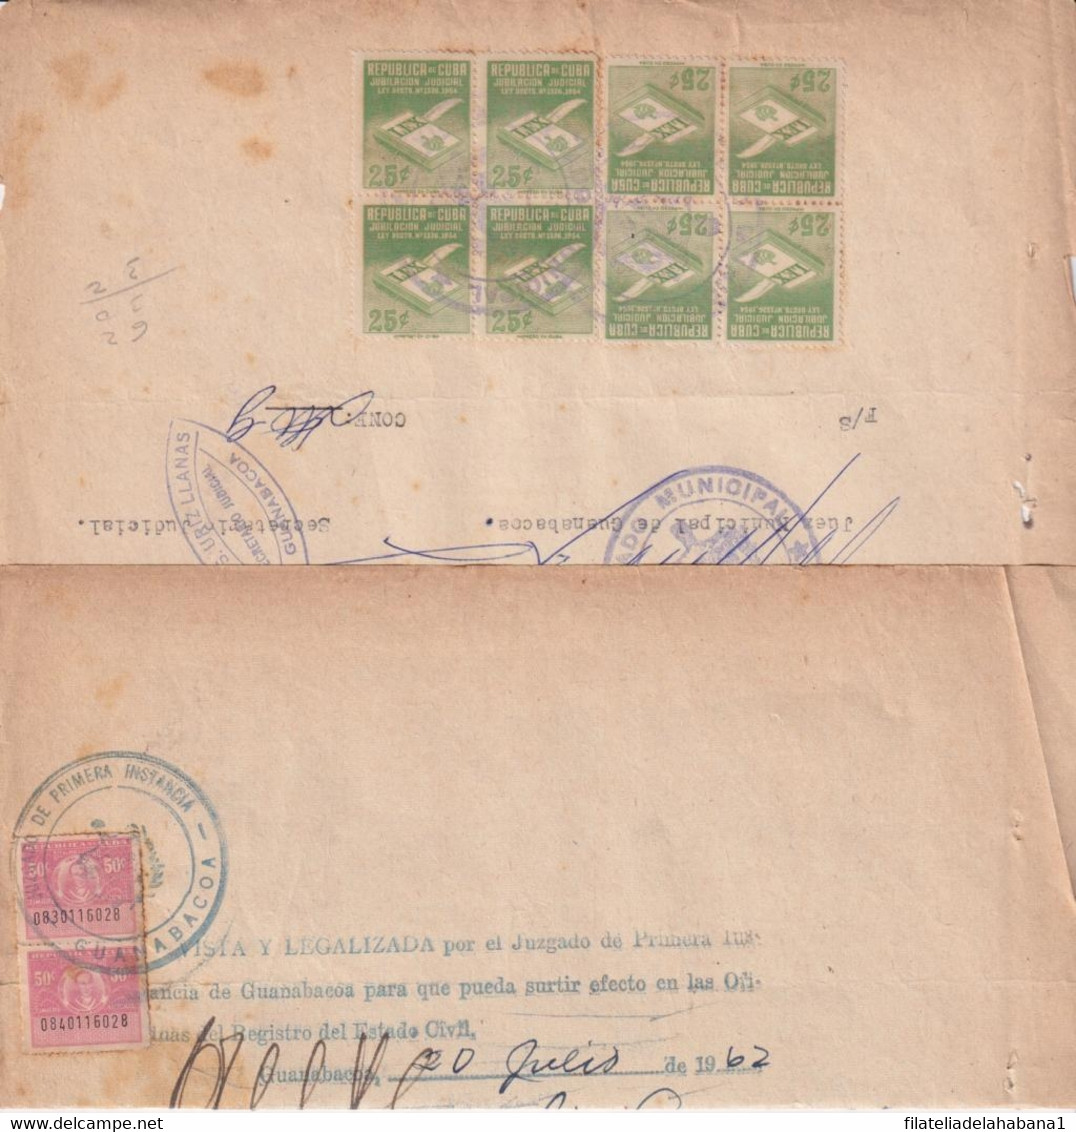 REP-419 CUBA (LG1920) REVENUE 1962 DOCS 50c (2) TIMBRE + 25c (8) JUBILACION NOTARIAL. - Postage Due